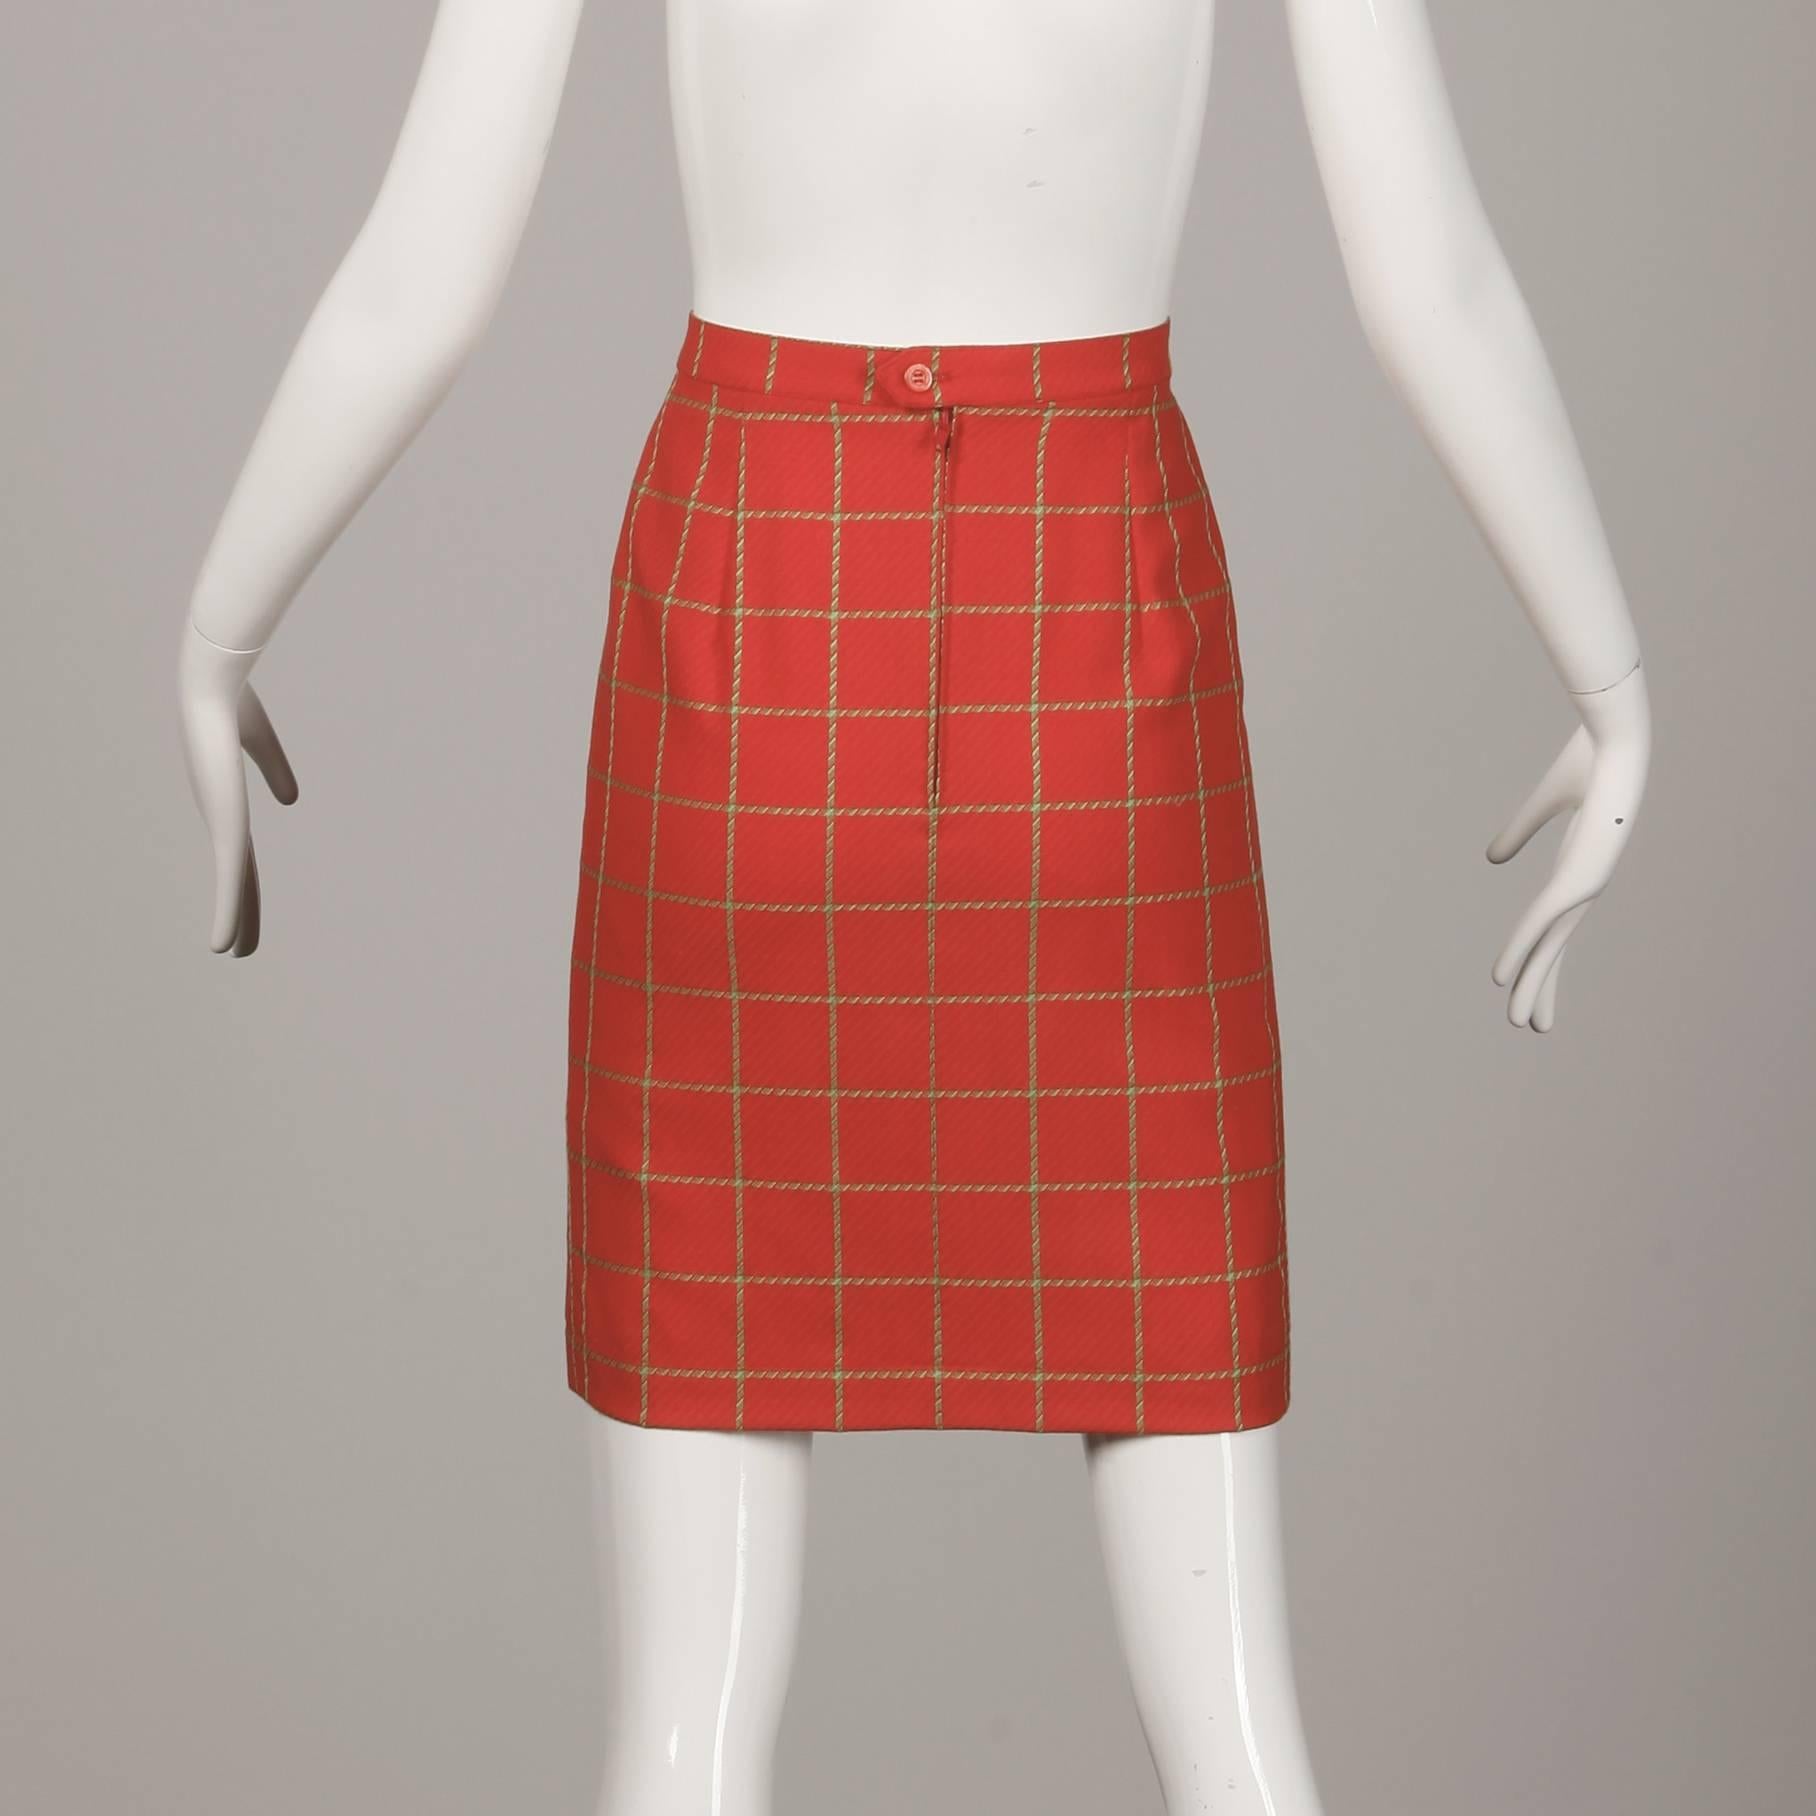 1980s Bernard Perris Vintage Wool/ Cashmere Jacket + Skirt Suit Ensemble For Sale 1